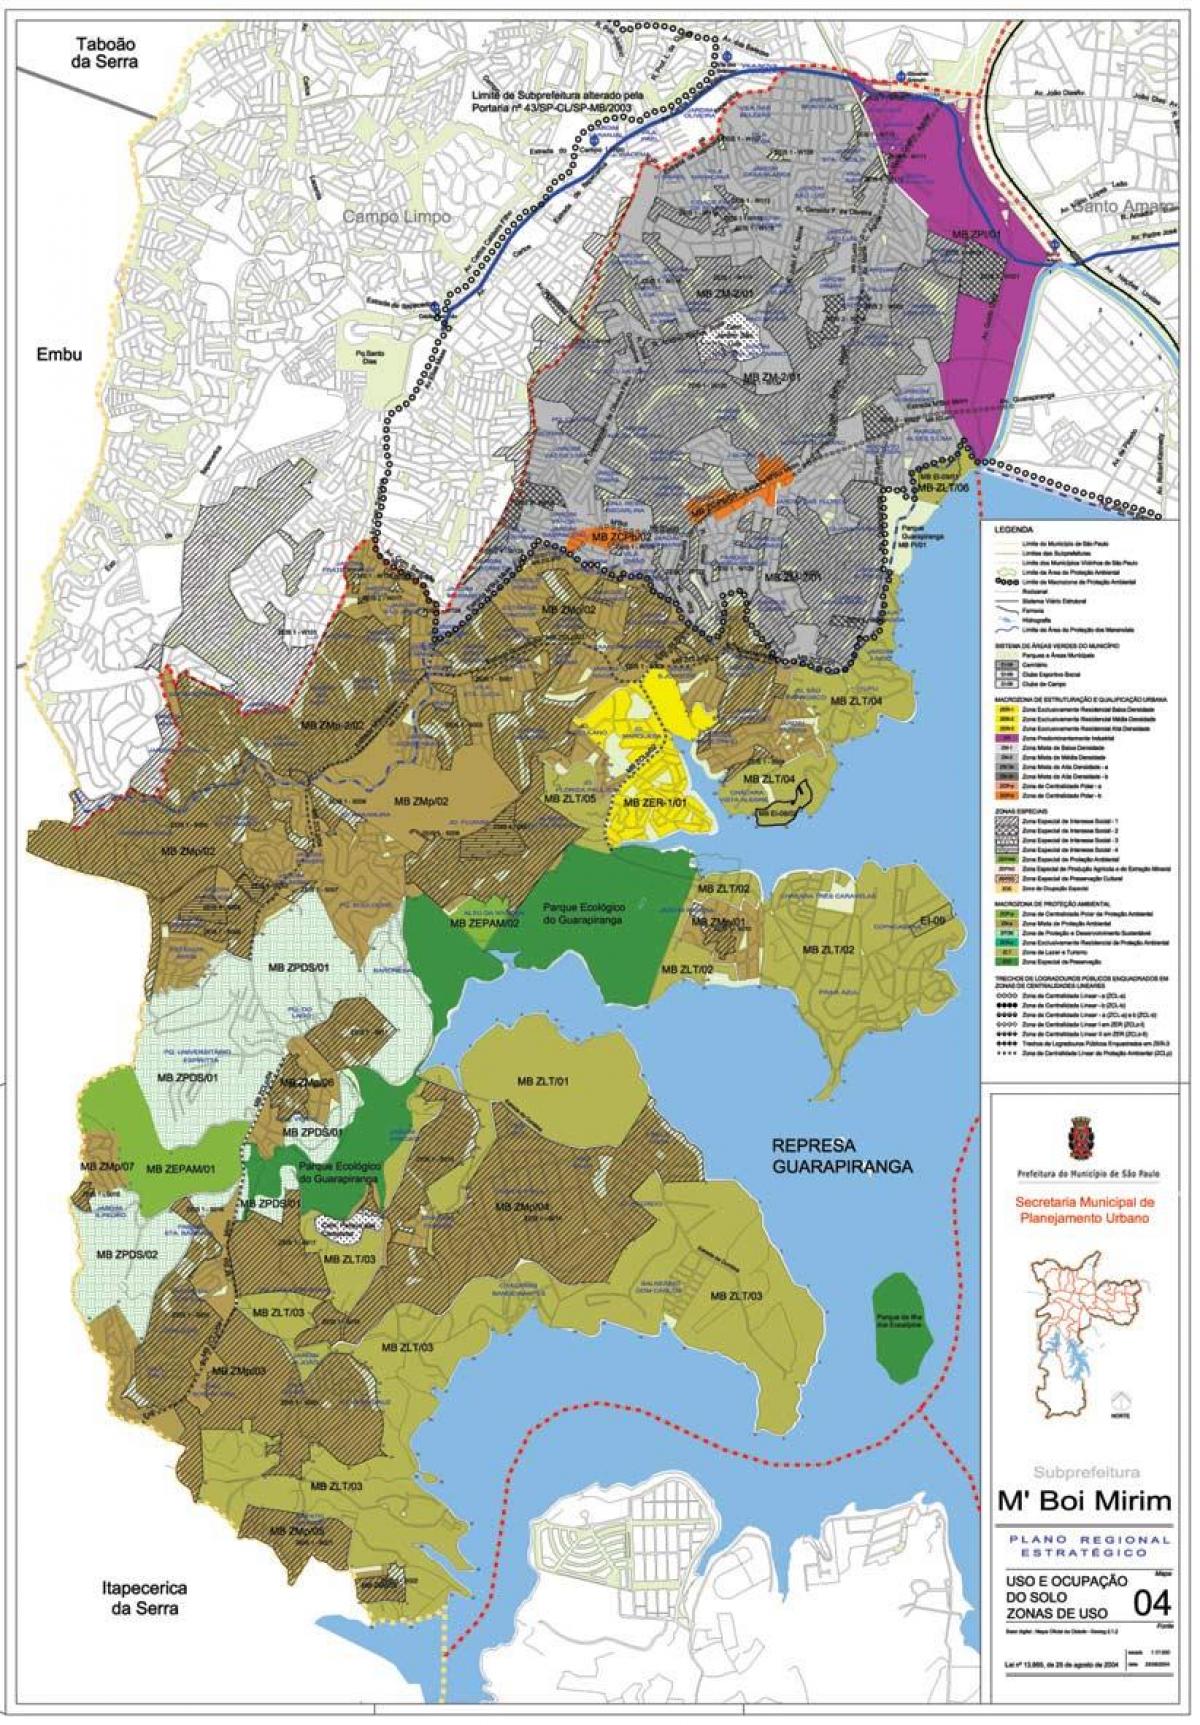 Toprağın M'Boi Mirim, São Paulo haritası - İşgal